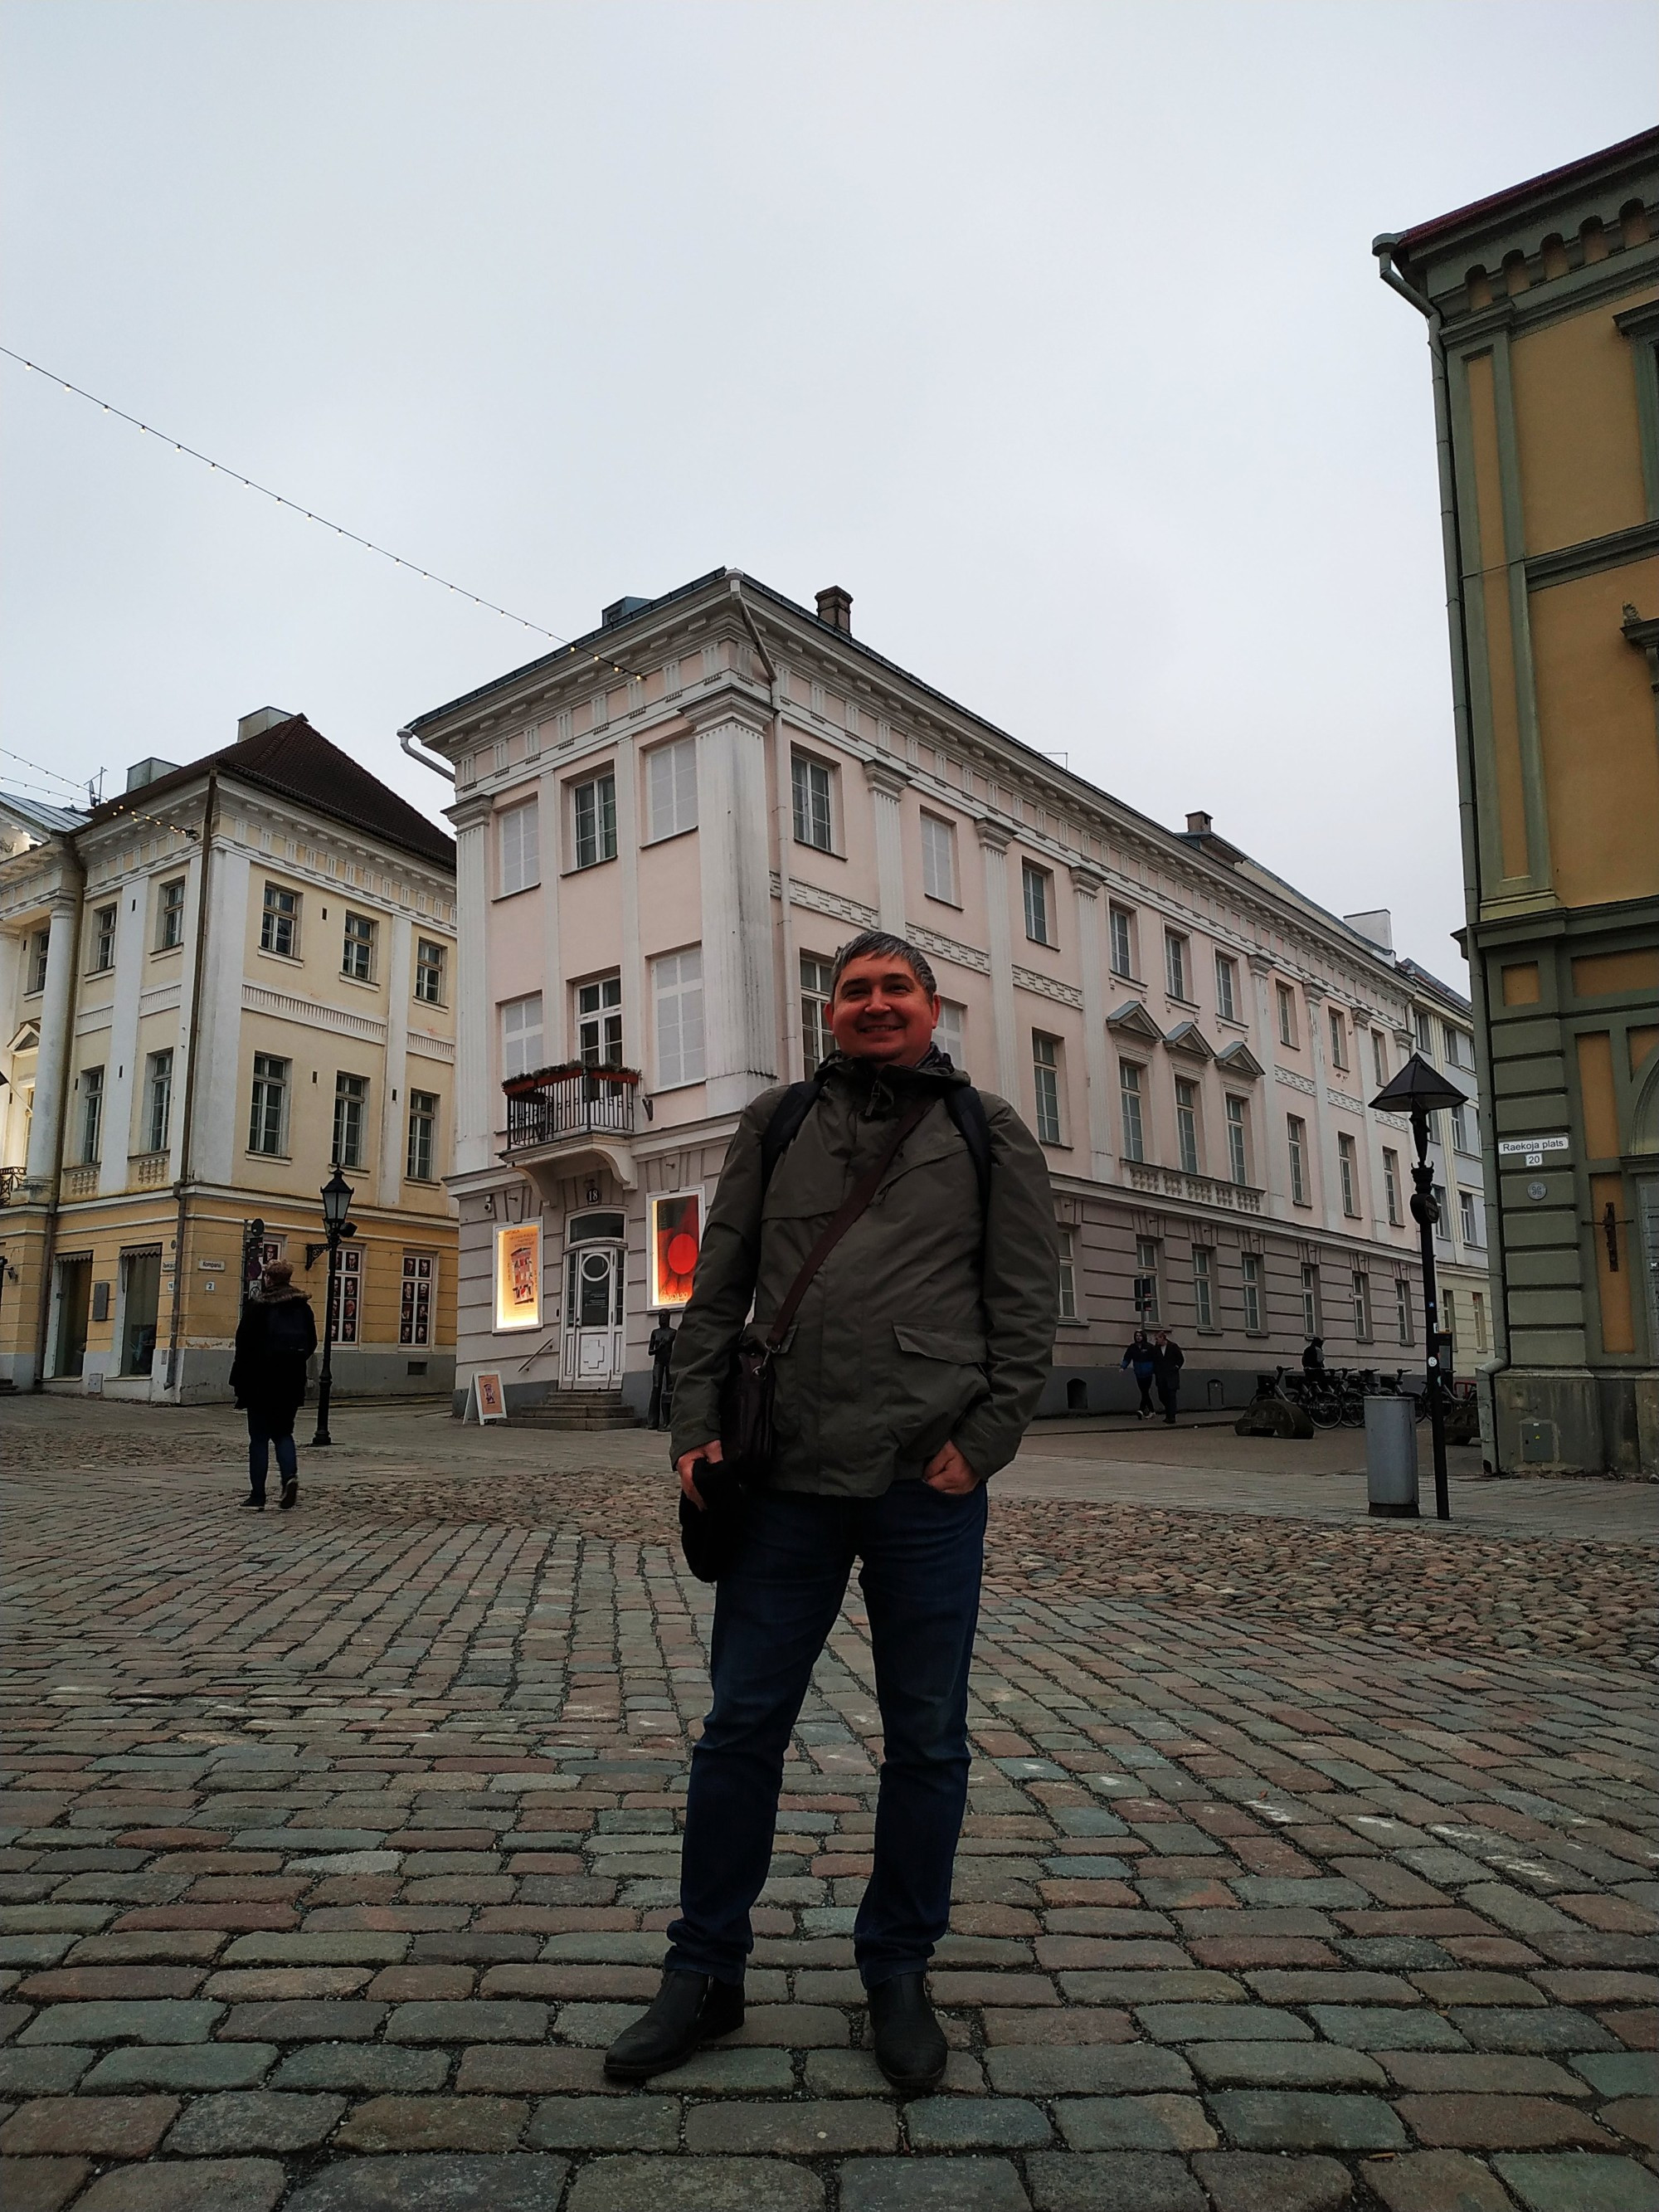 Тарту. Я на фоне «Падающего дома». (21.12.2019)